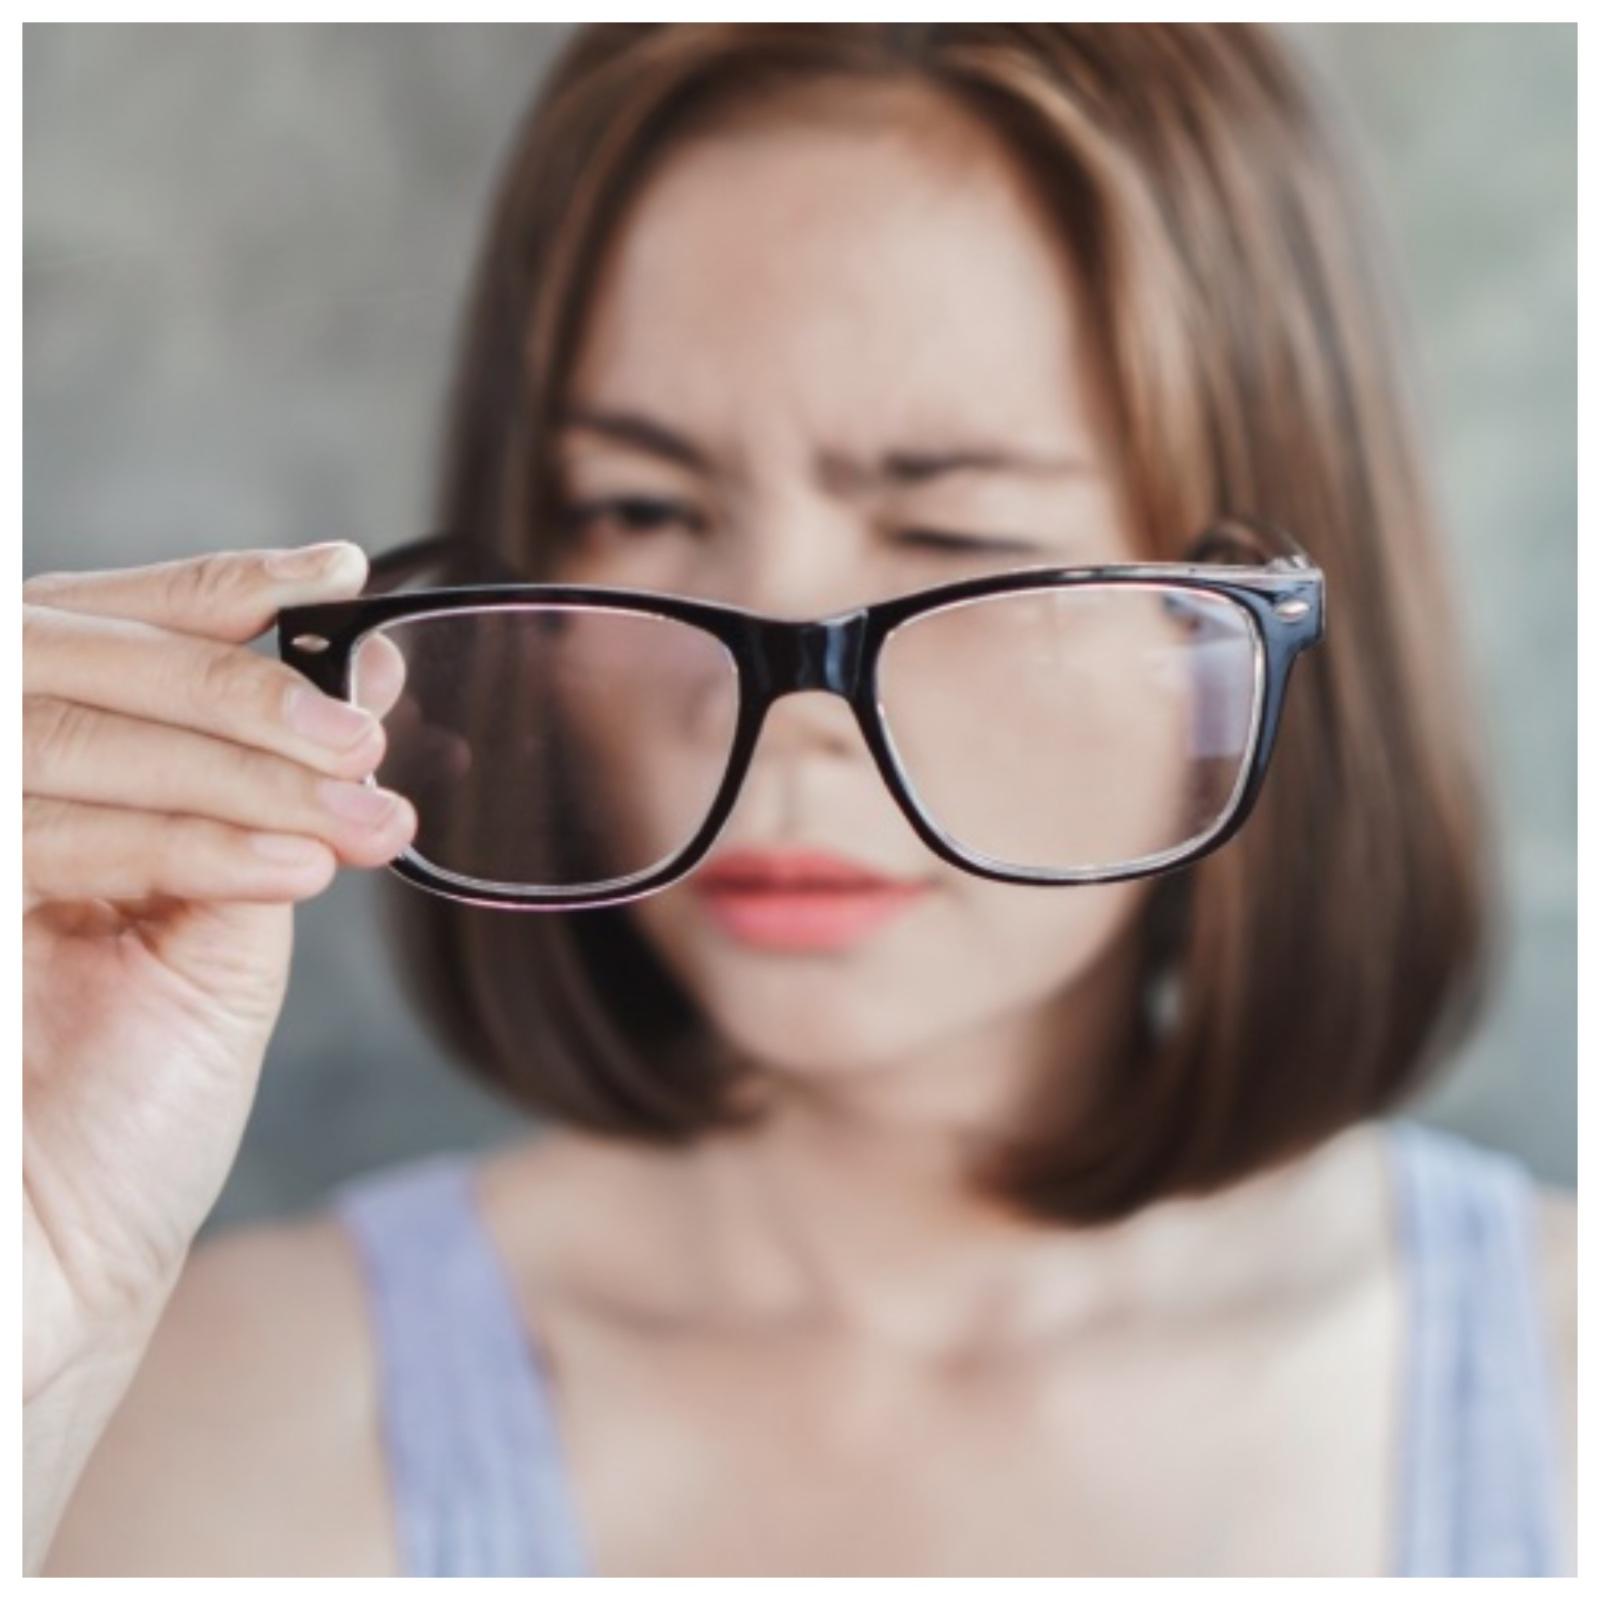 5 простых советов, как сохранить здоровье глаз